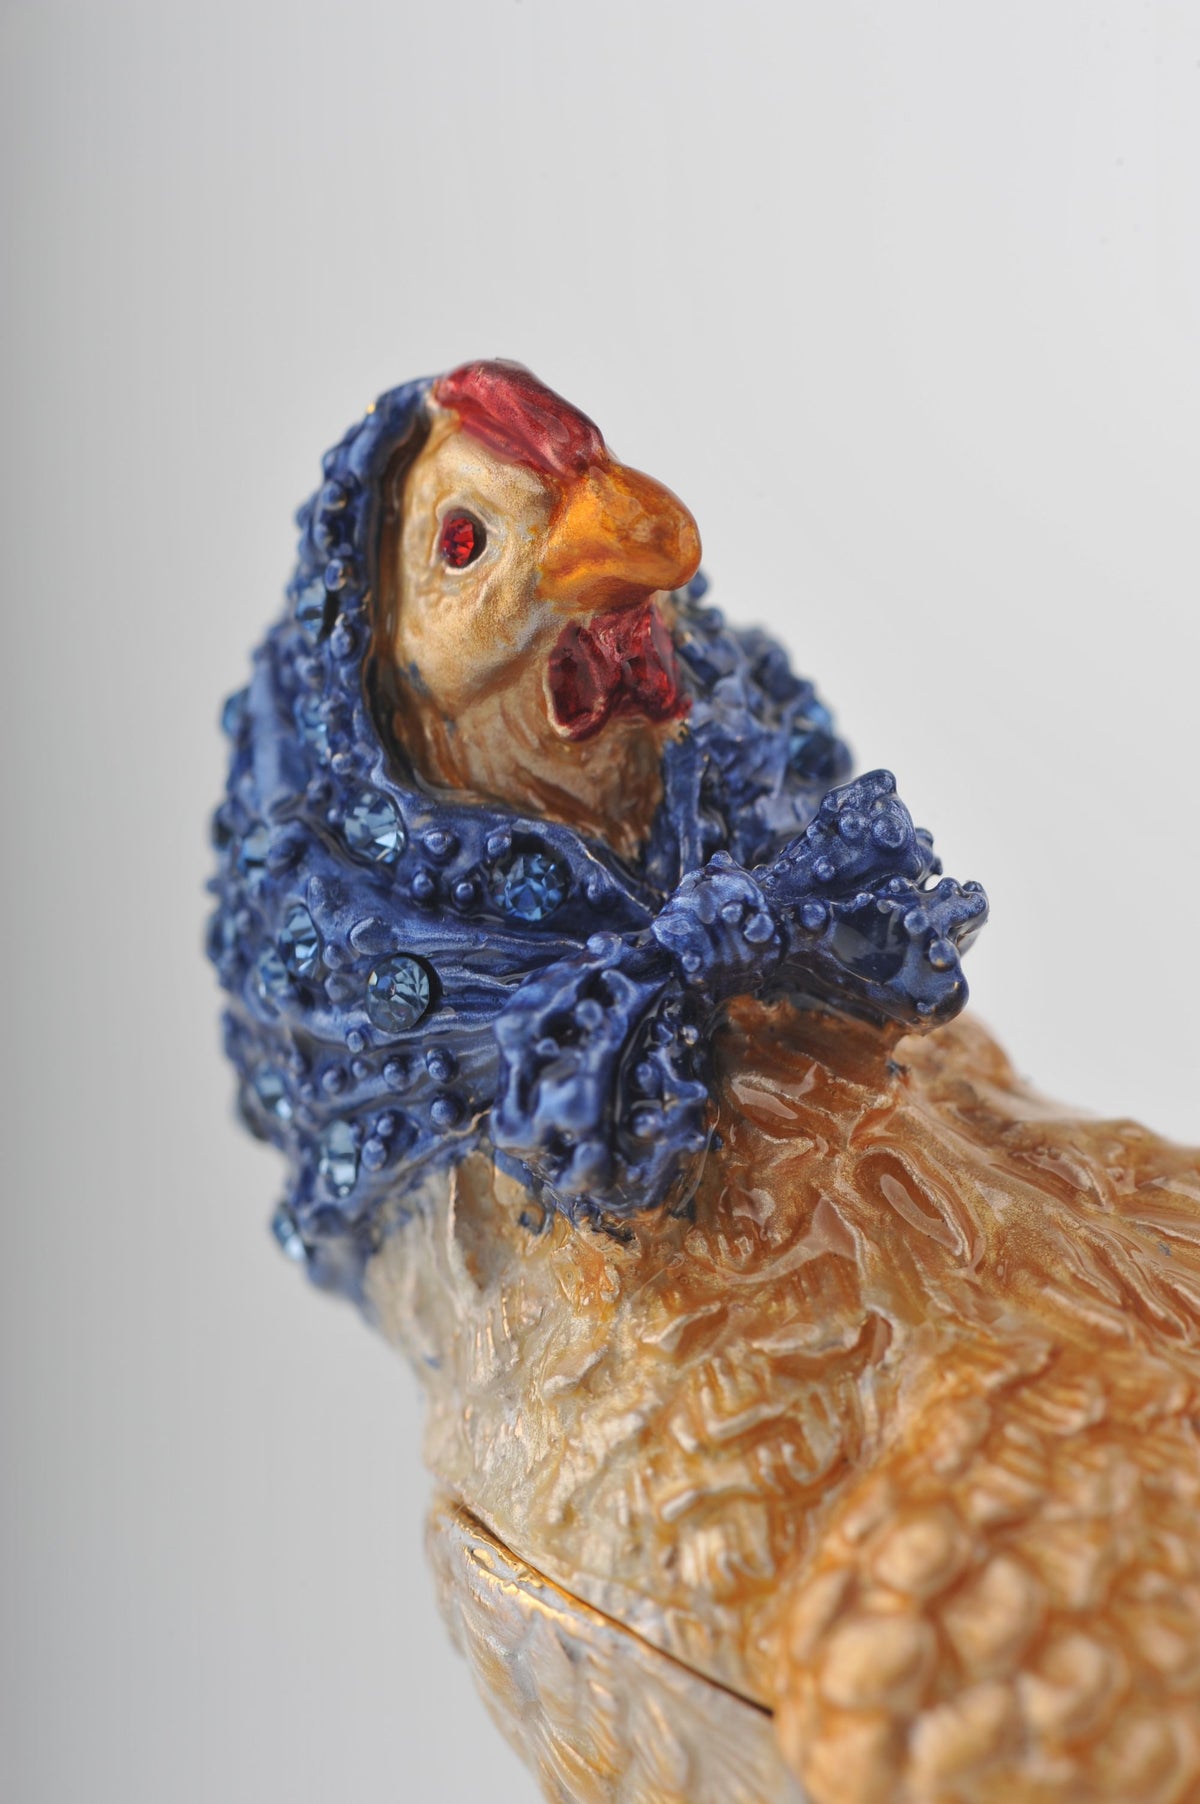 Keren Kopal Chicken with Head Cover  50.75